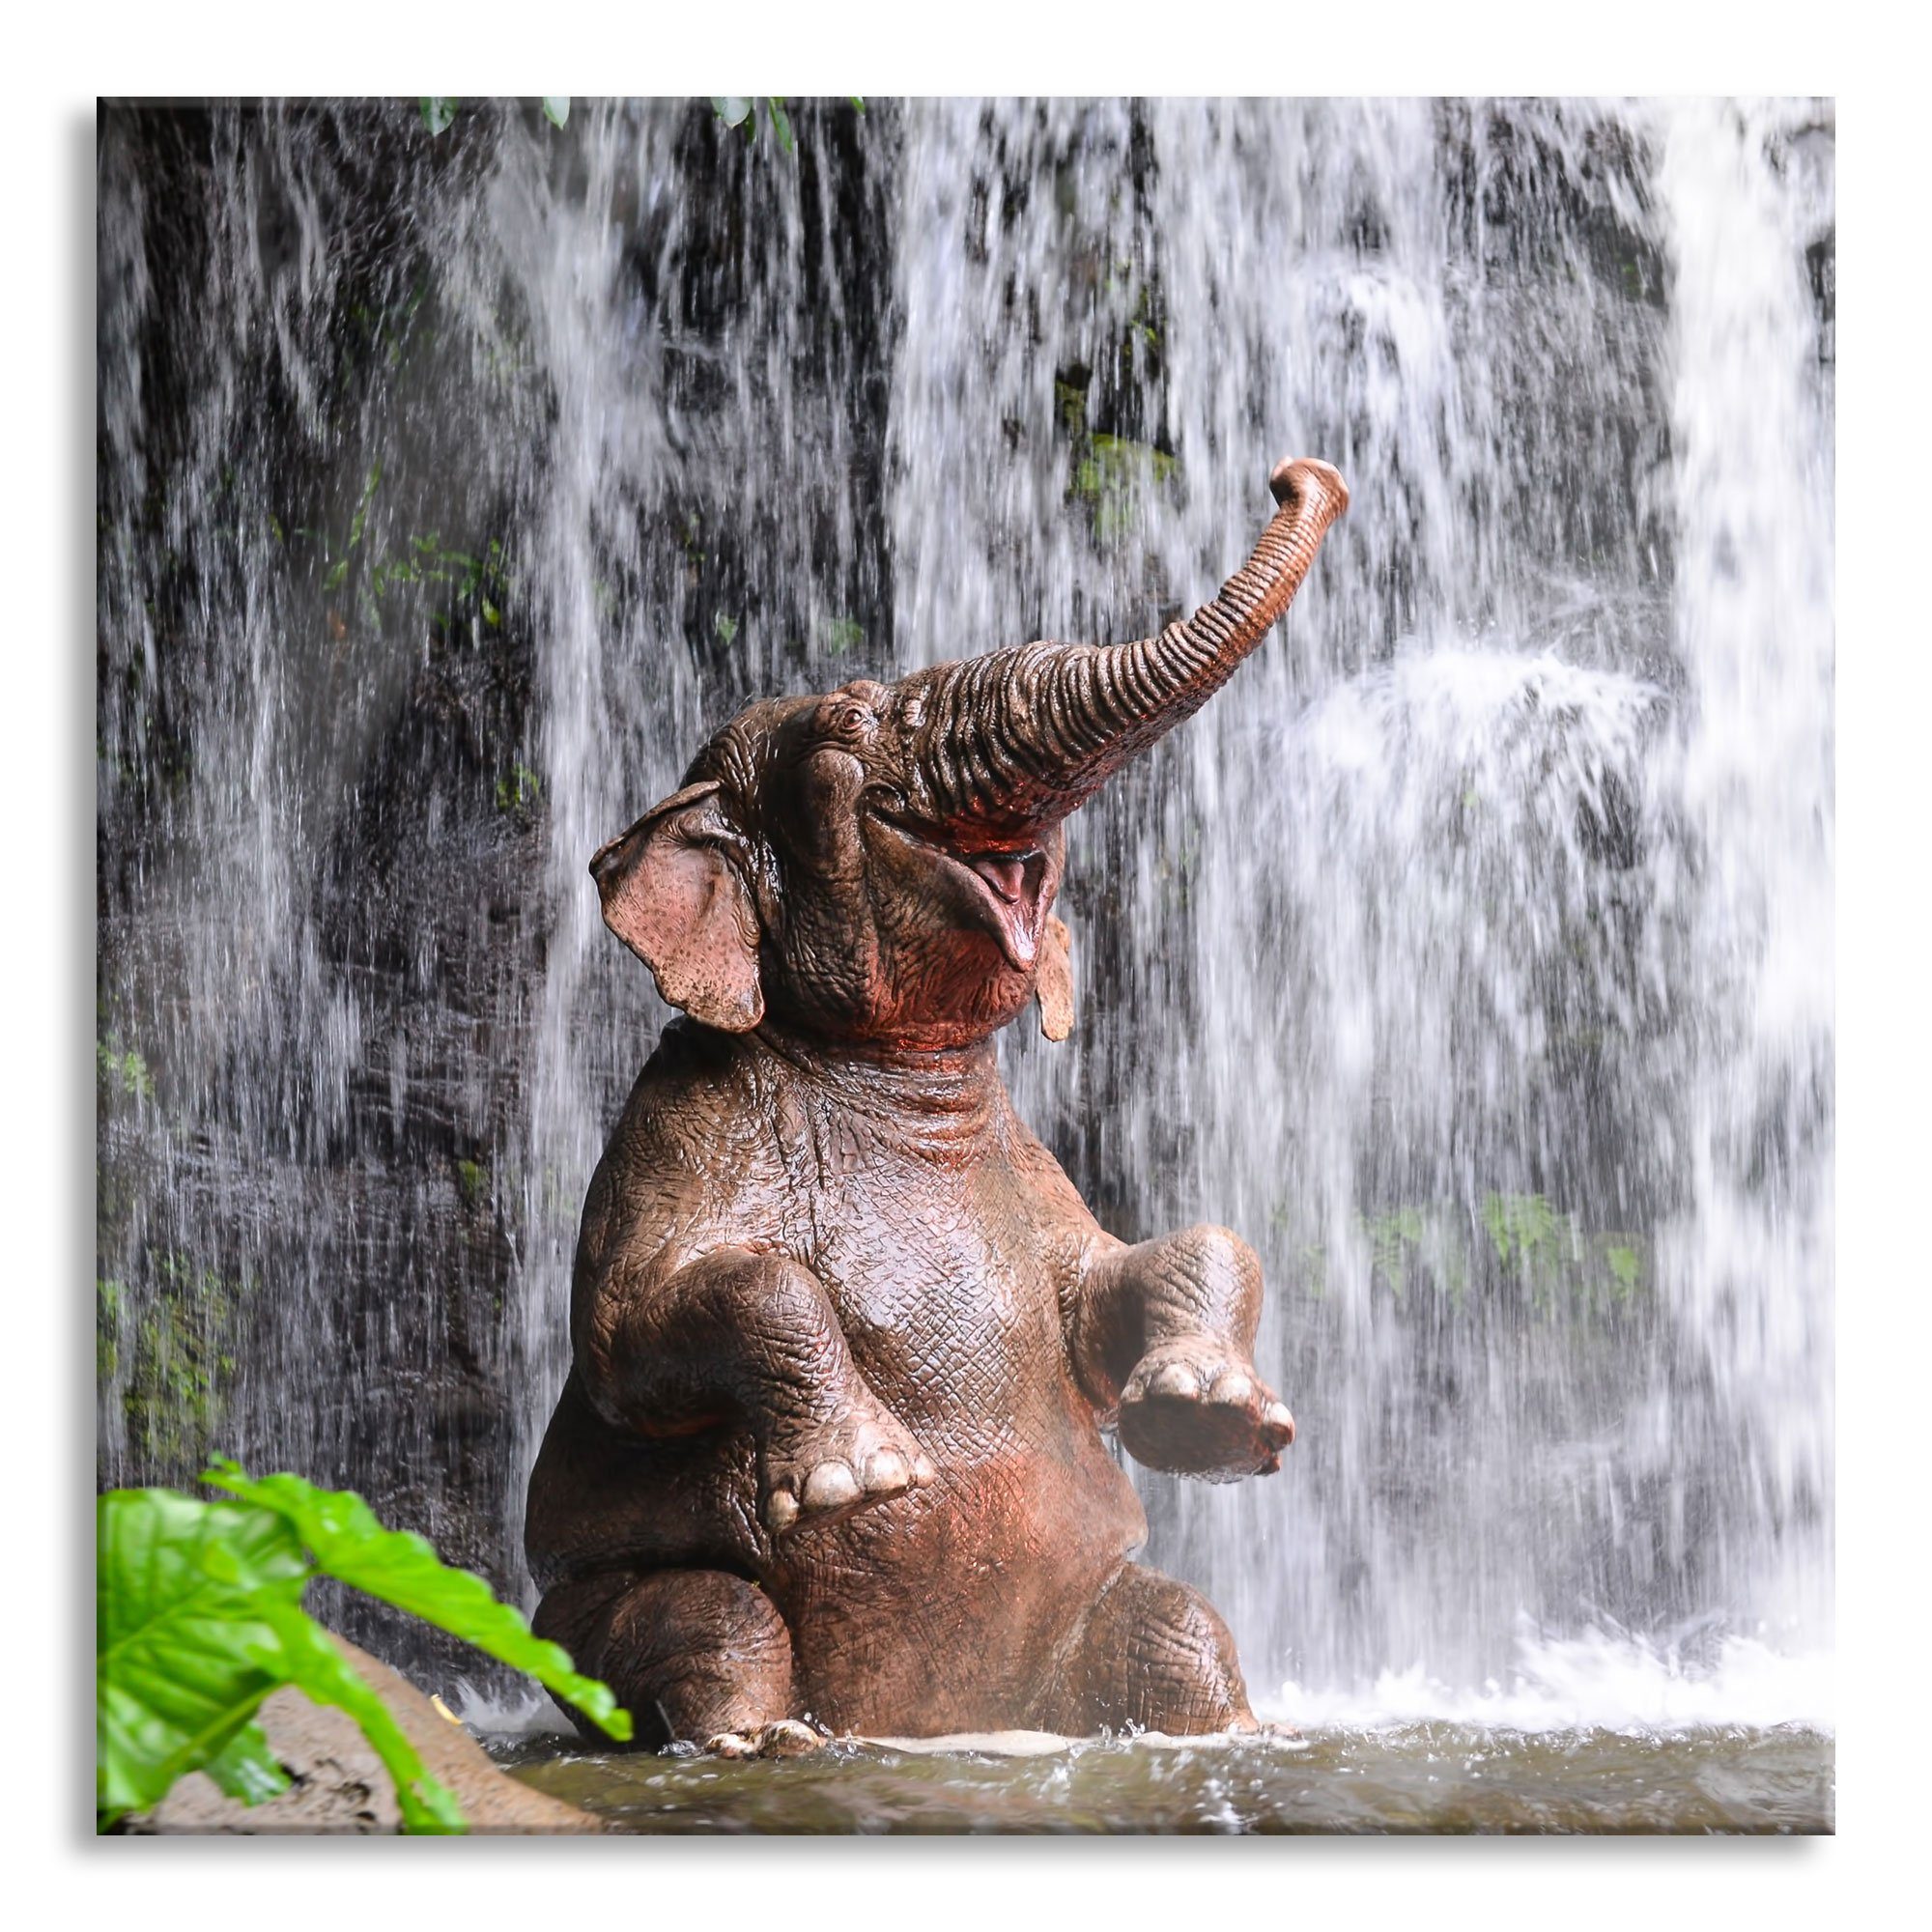 Pixxprint Glasbild Babyelefant am Wasserfall, Babyelefant am Wasserfall (1 St), Glasbild aus Echtglas, inkl. Aufhängungen und Abstandshalter